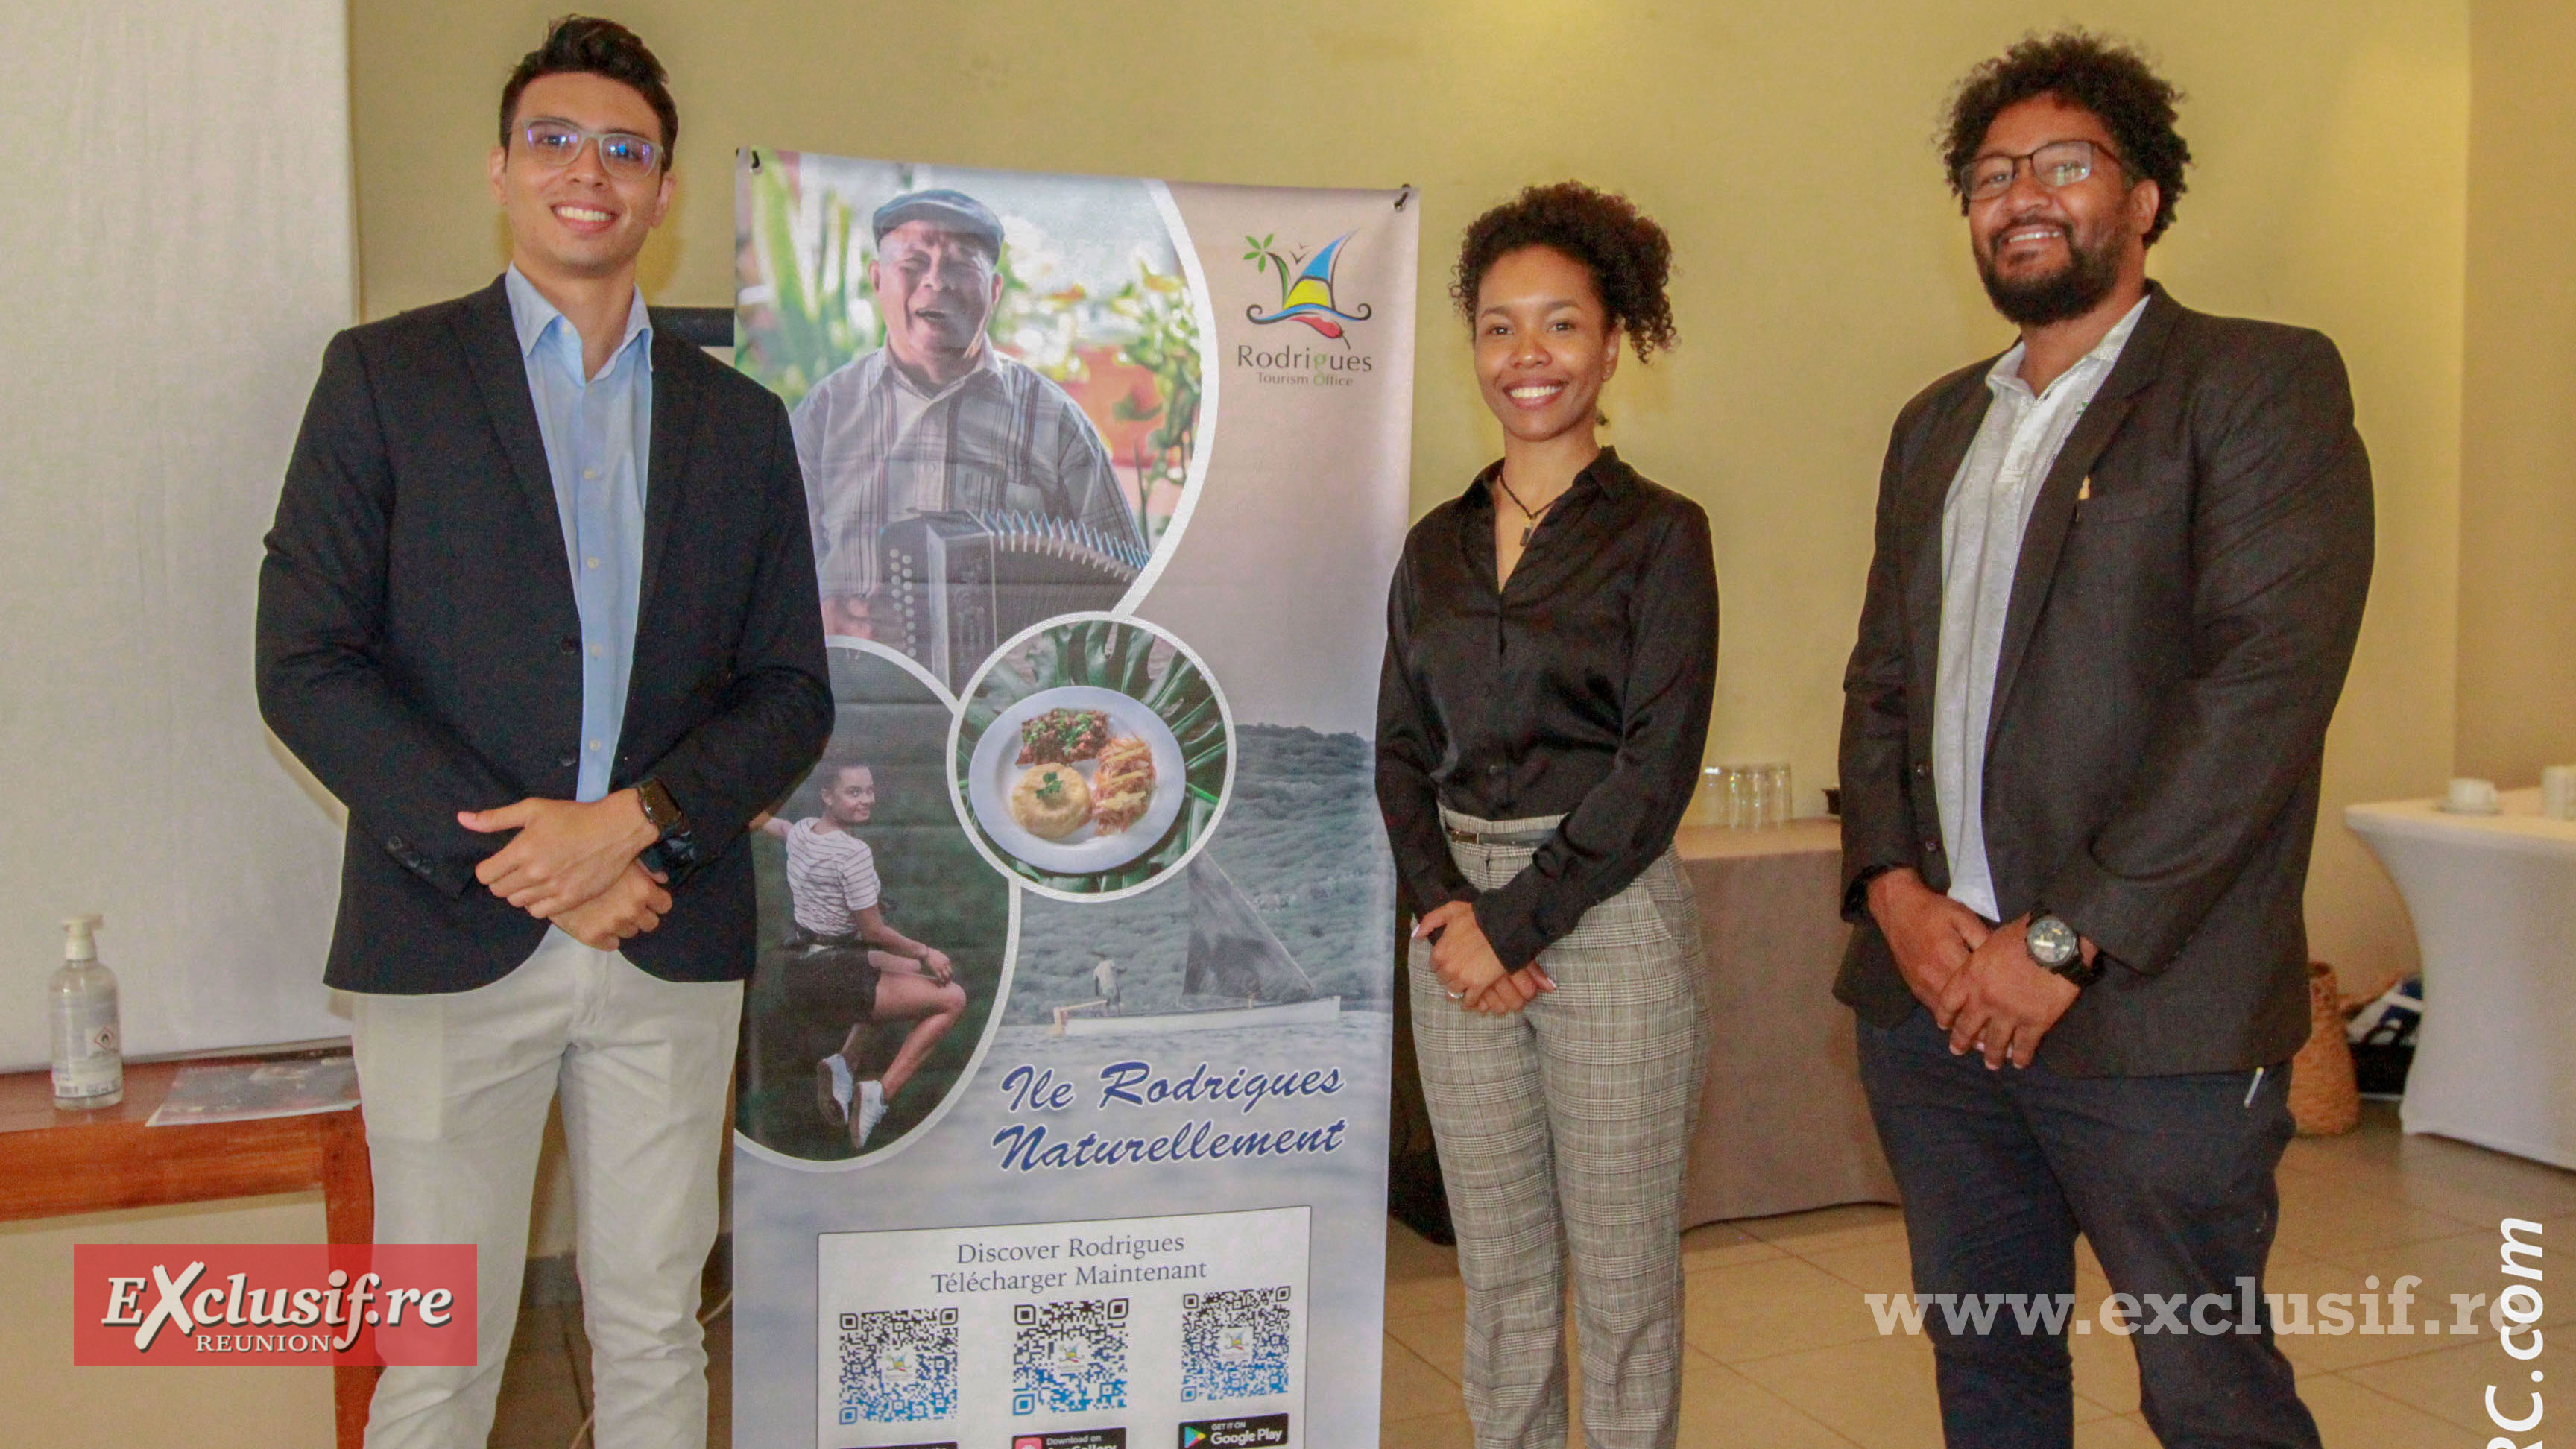 Issane Agathe, directrice de l'Office du Tourisme de Rodrigues, entourée de Claudarel Botshane (à droite), directeur de Discovey Rodrigues et Ferdinand Yeung de l’Office du Tourisme à Rodrigues